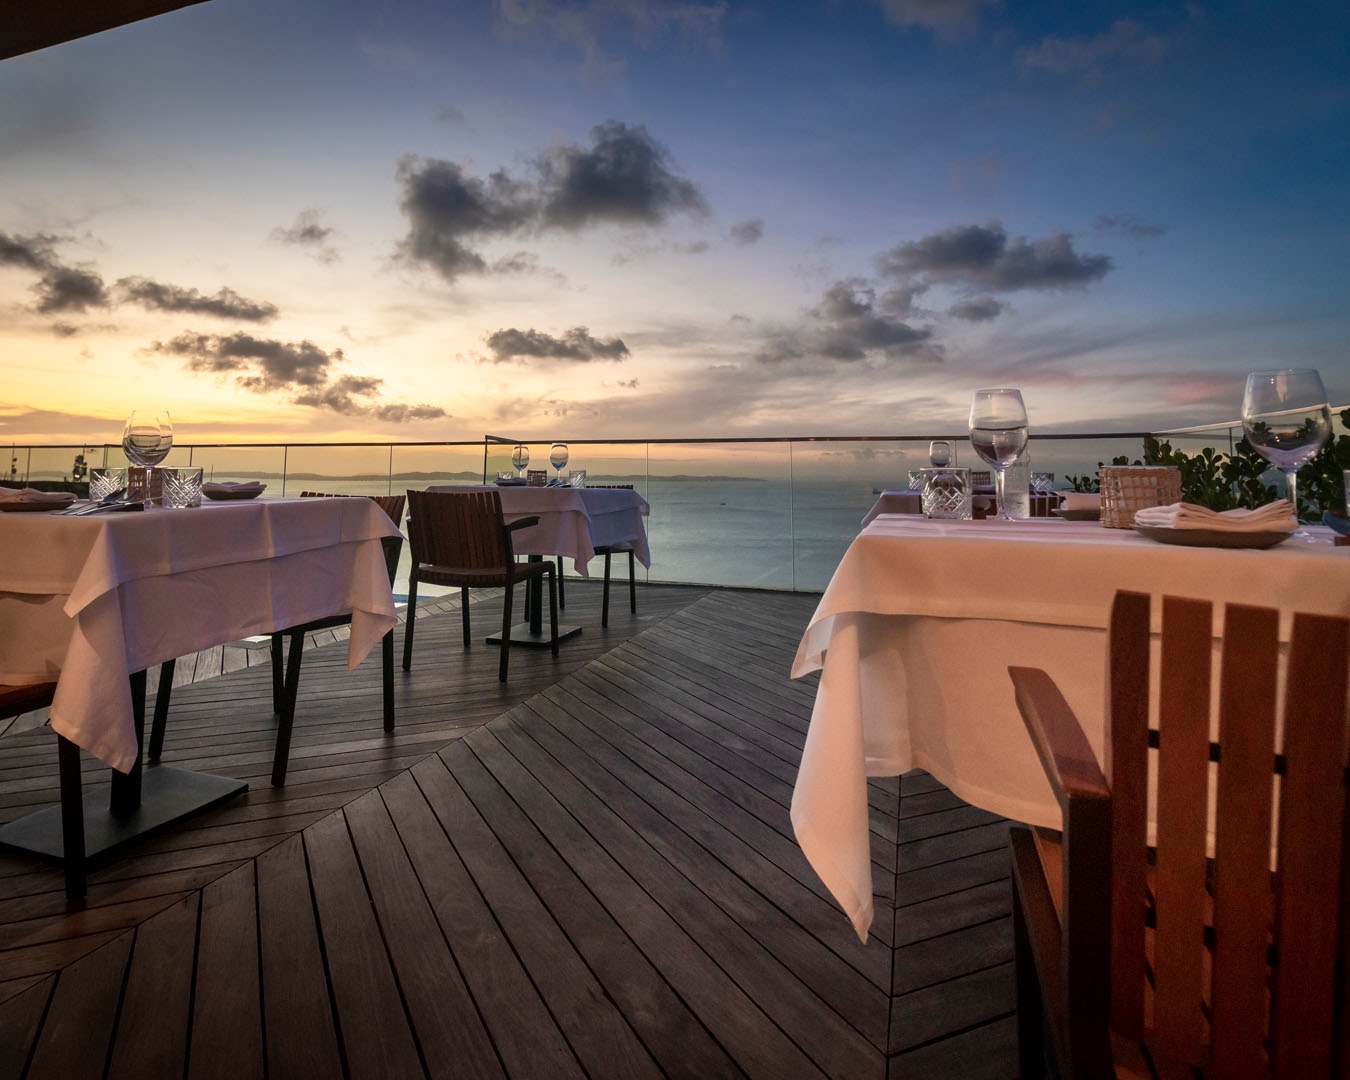 Rooftop do Fera Palace Hotel terá restaurante super Exclusivo comandado pelo Grupo Origem